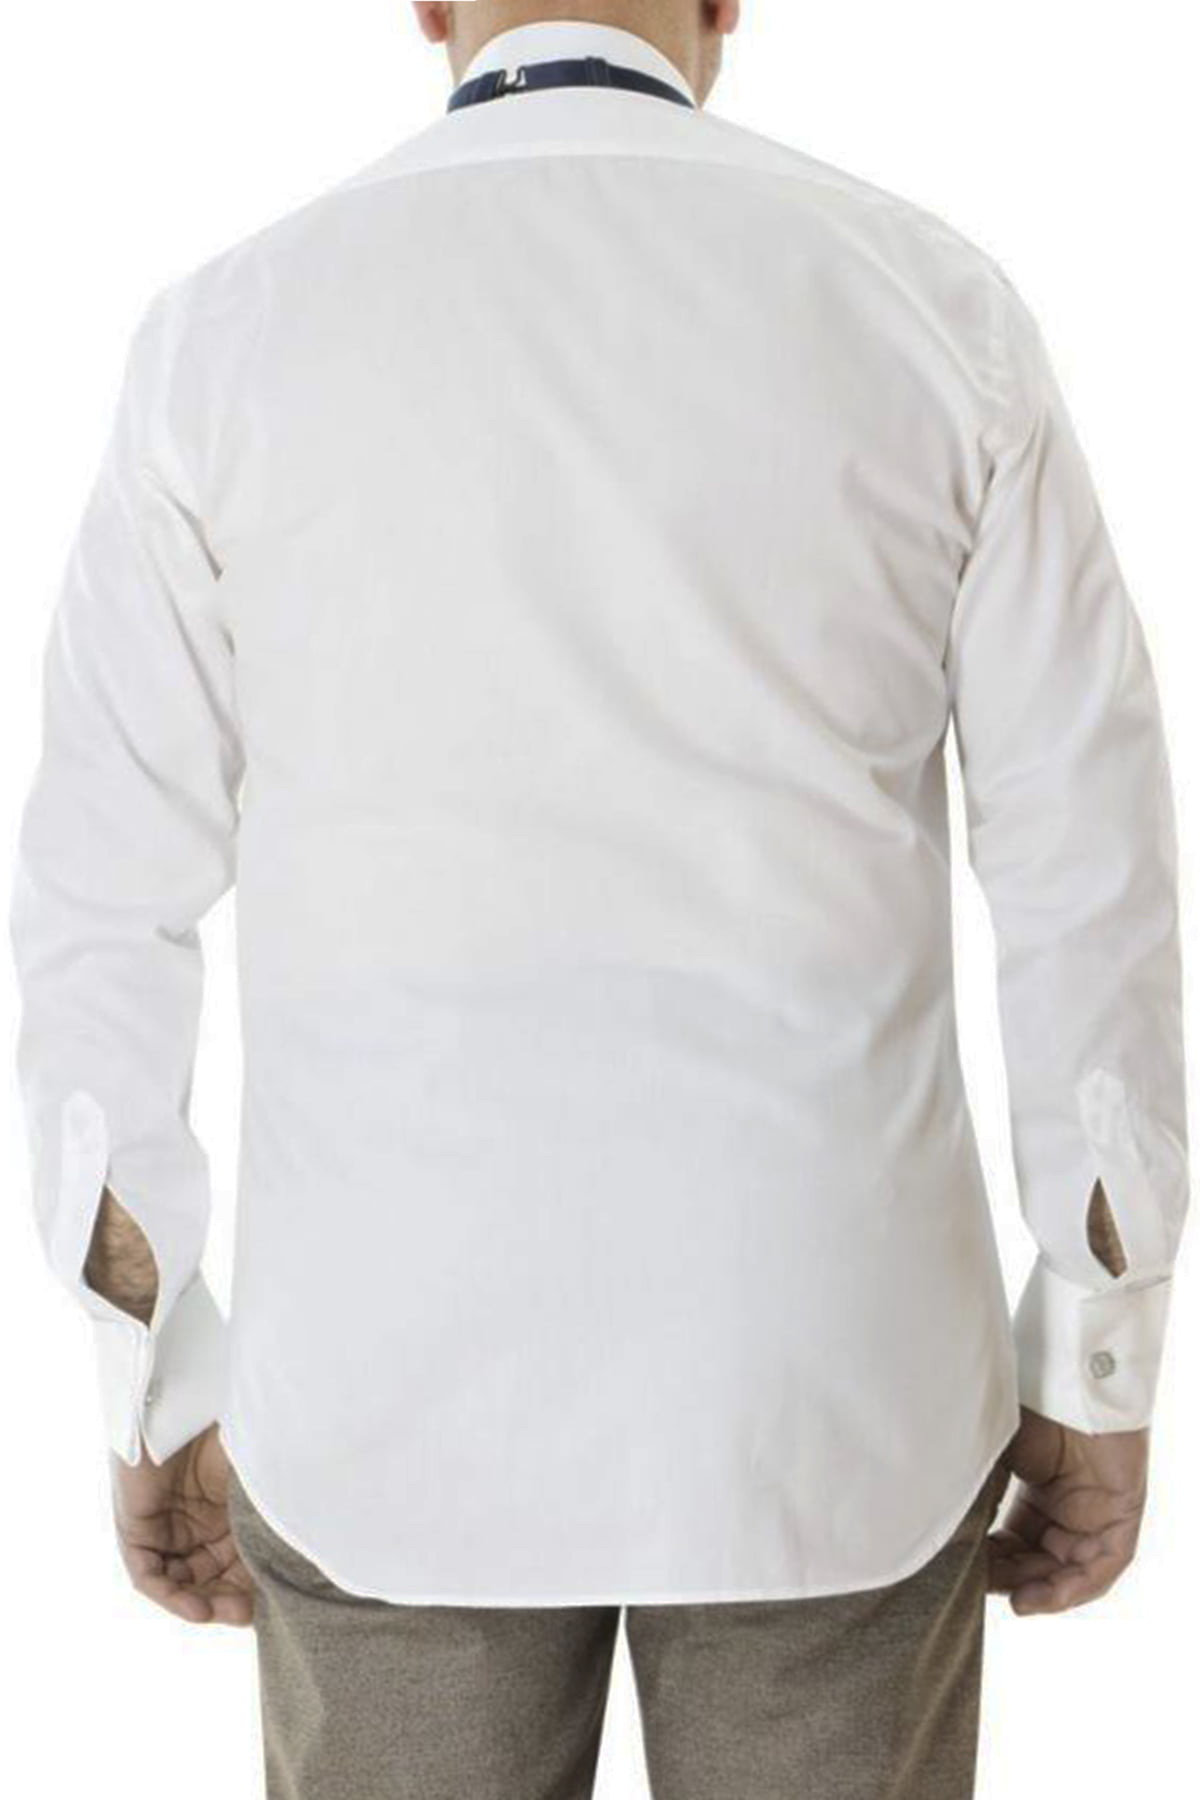 Camicia uomo regular collo diplomatico bianca bottoni scomparsa polso gemello